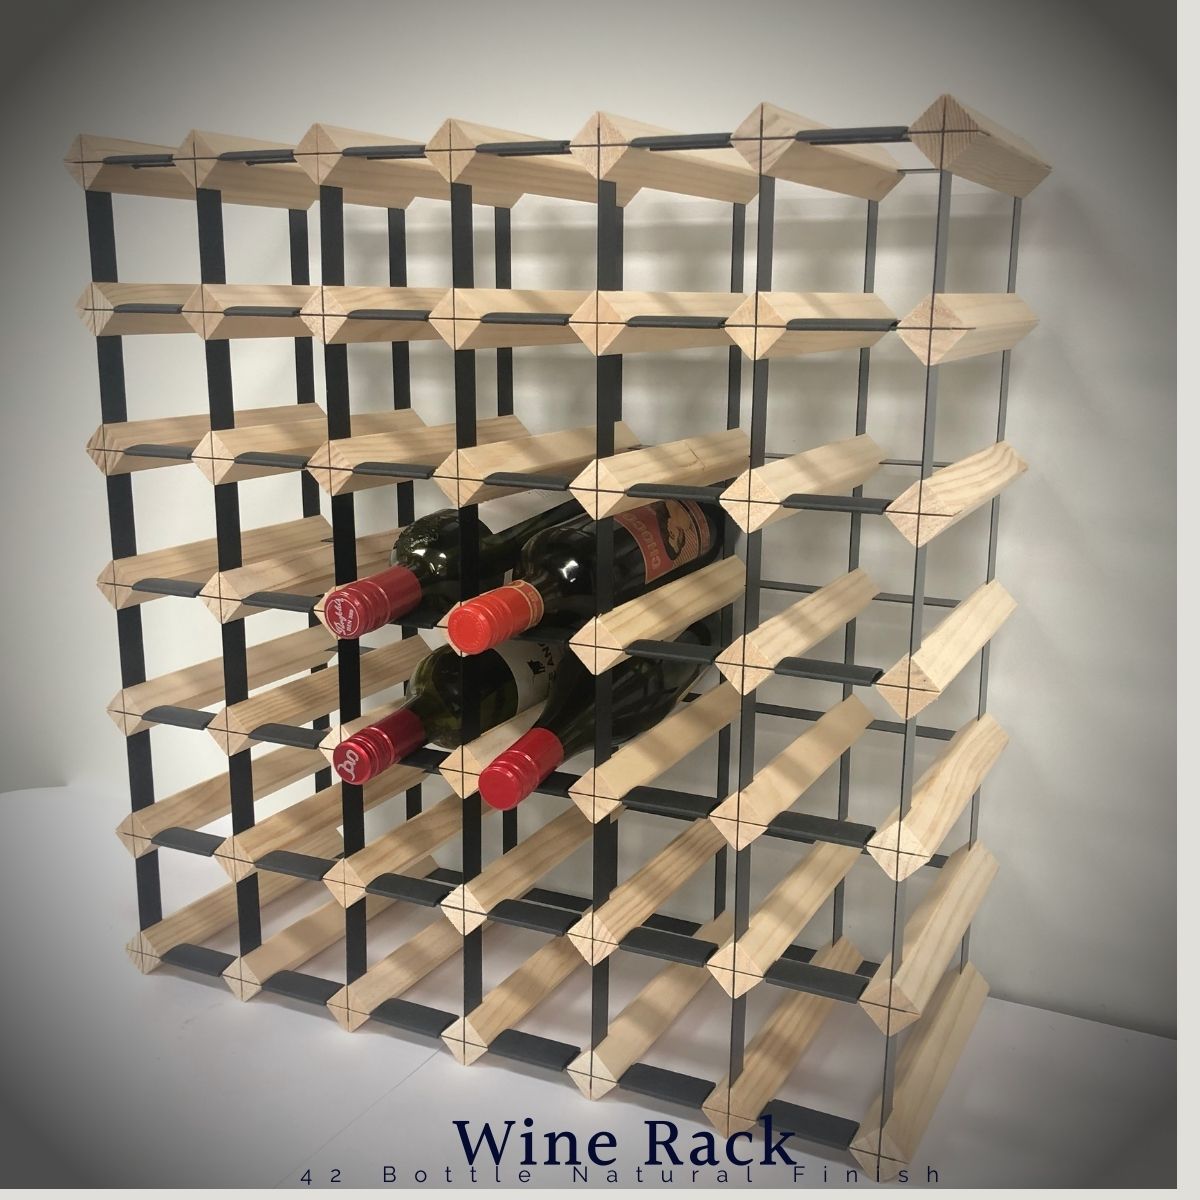 KingsBottle 42 Bottle Timber Wine Rack 6x6 Configuration WRT042